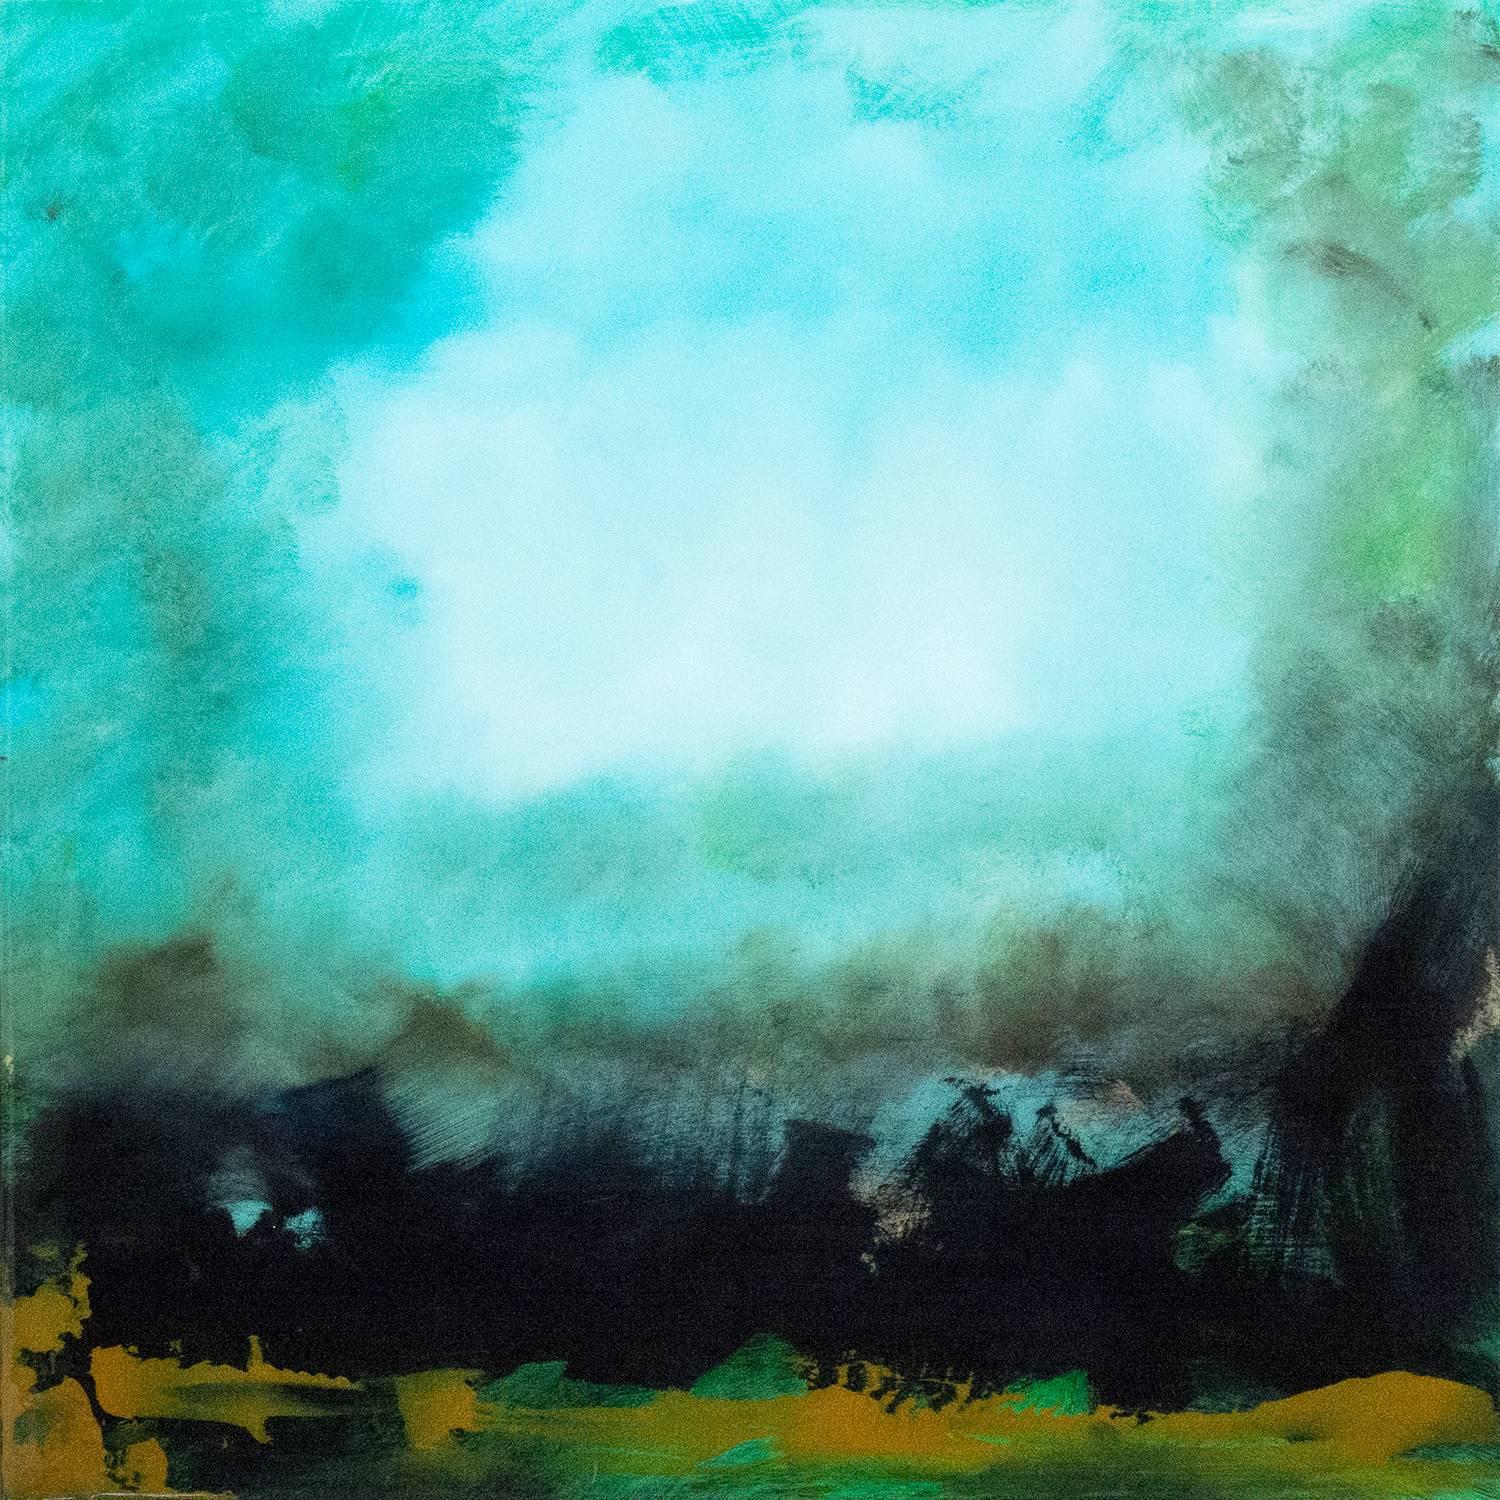 Rujuh 5 - paysage atmosphérique, coloré, abstrait, acrylique, résine sur panneau